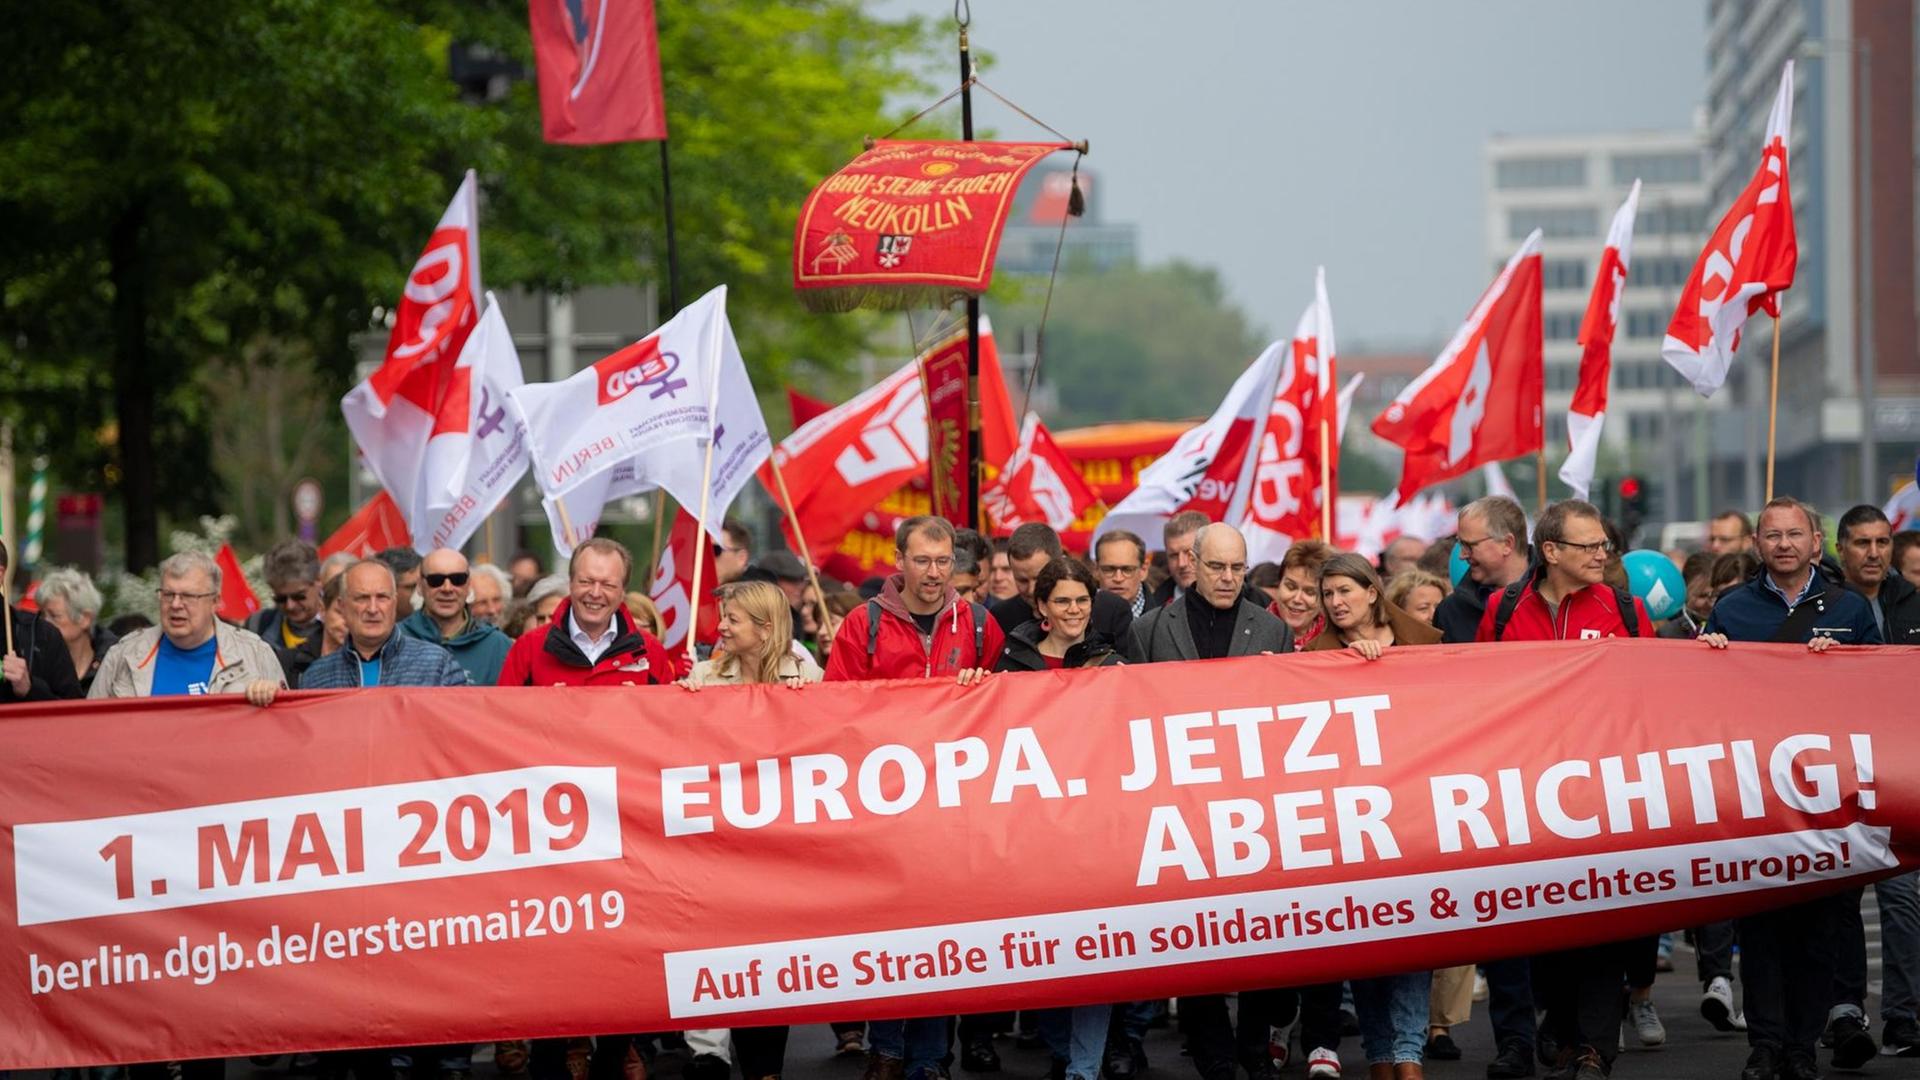 Zahlreiche Menschen nehmen in Berlin an der Demonstration der Gewerkschaften zum Tag der Arbeit teil. Auf ihrem Plakat steht: "Europa. Jetzt aber richtig!"